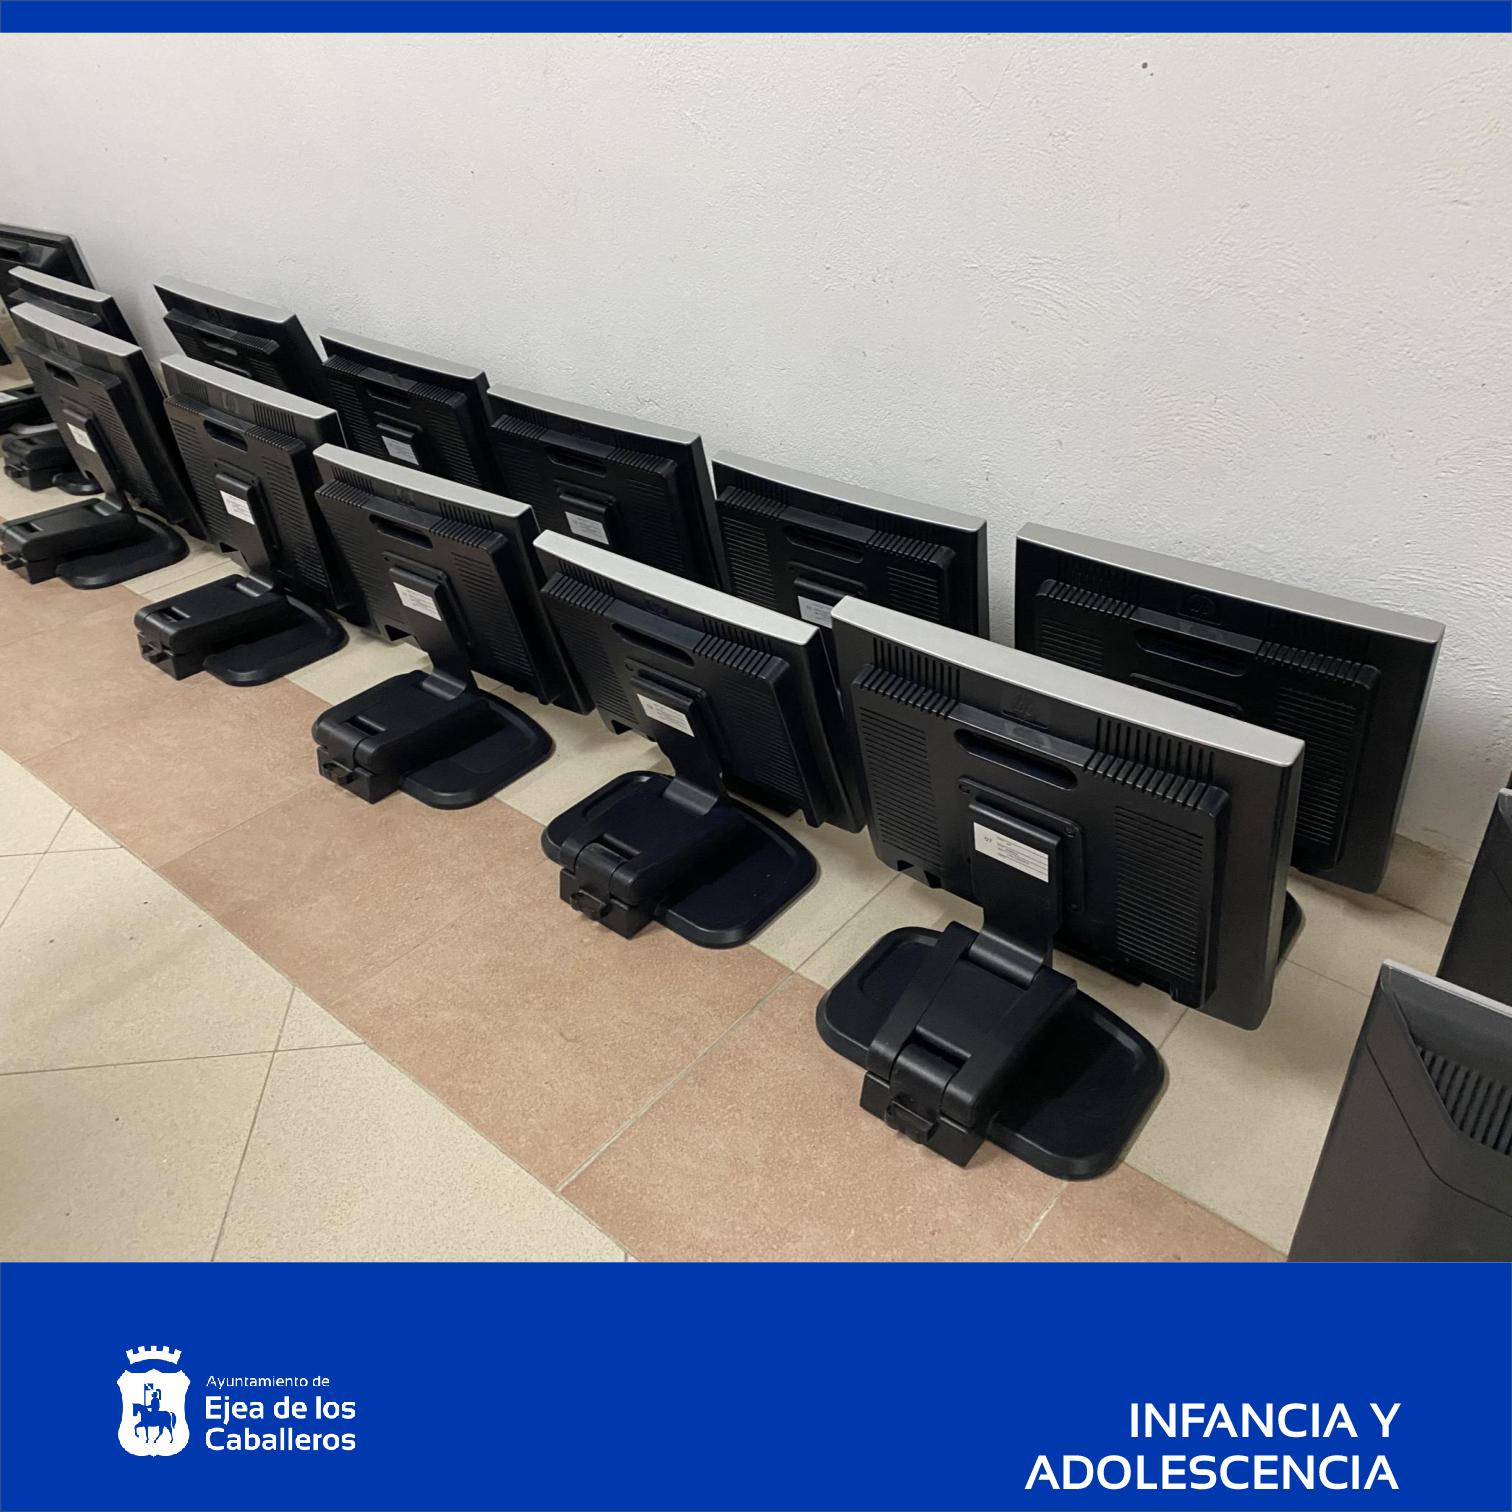 En este momento estás viendo El Ayuntamiento de Ejea realiza una donación de pantallas de ordenador a los centros educativos del municipio